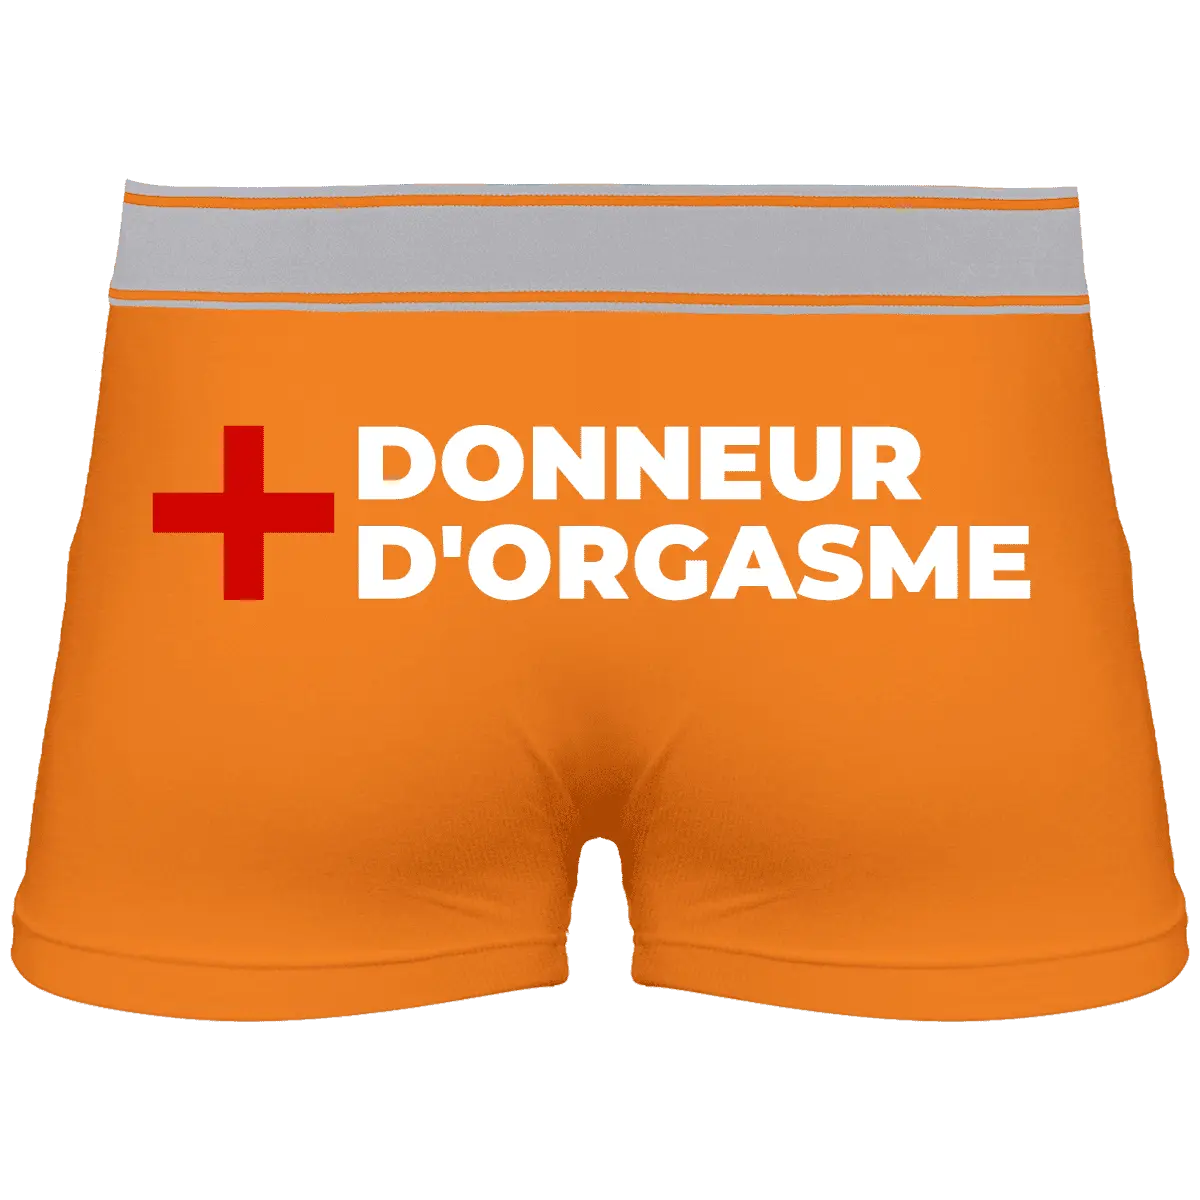 Caleçon "Donneur d'orgasme" - French Humour